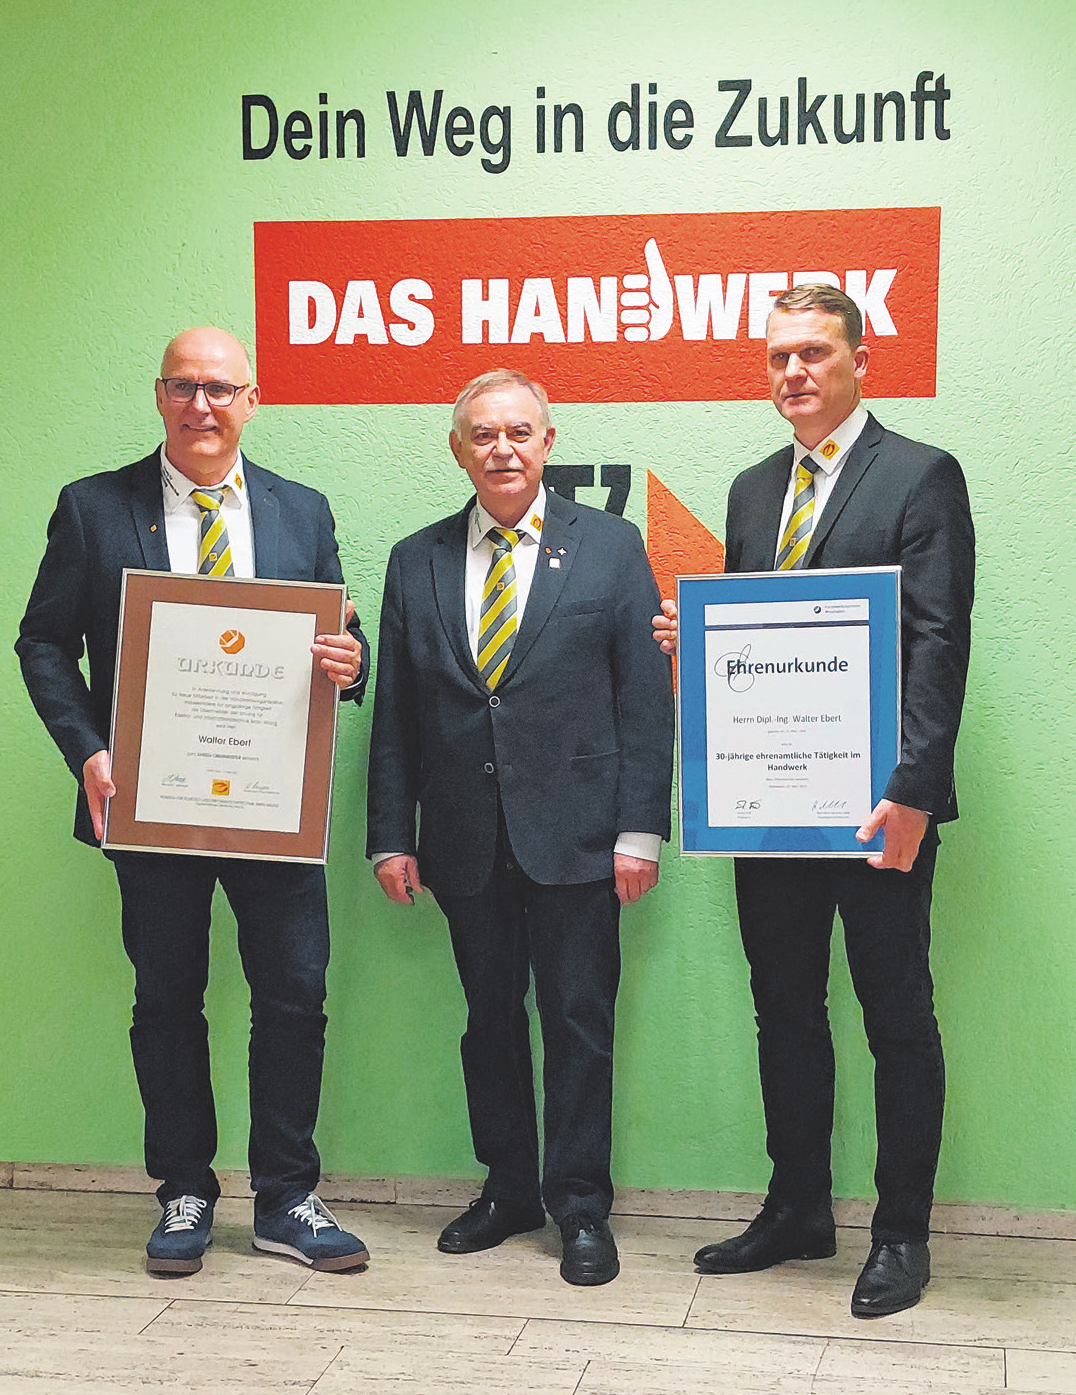 Von links nach rechts: Der neue Obermeister Mike Lorenz, Ehrenobermeister Walter Ebert und stv. Obermeister Timo Wernz